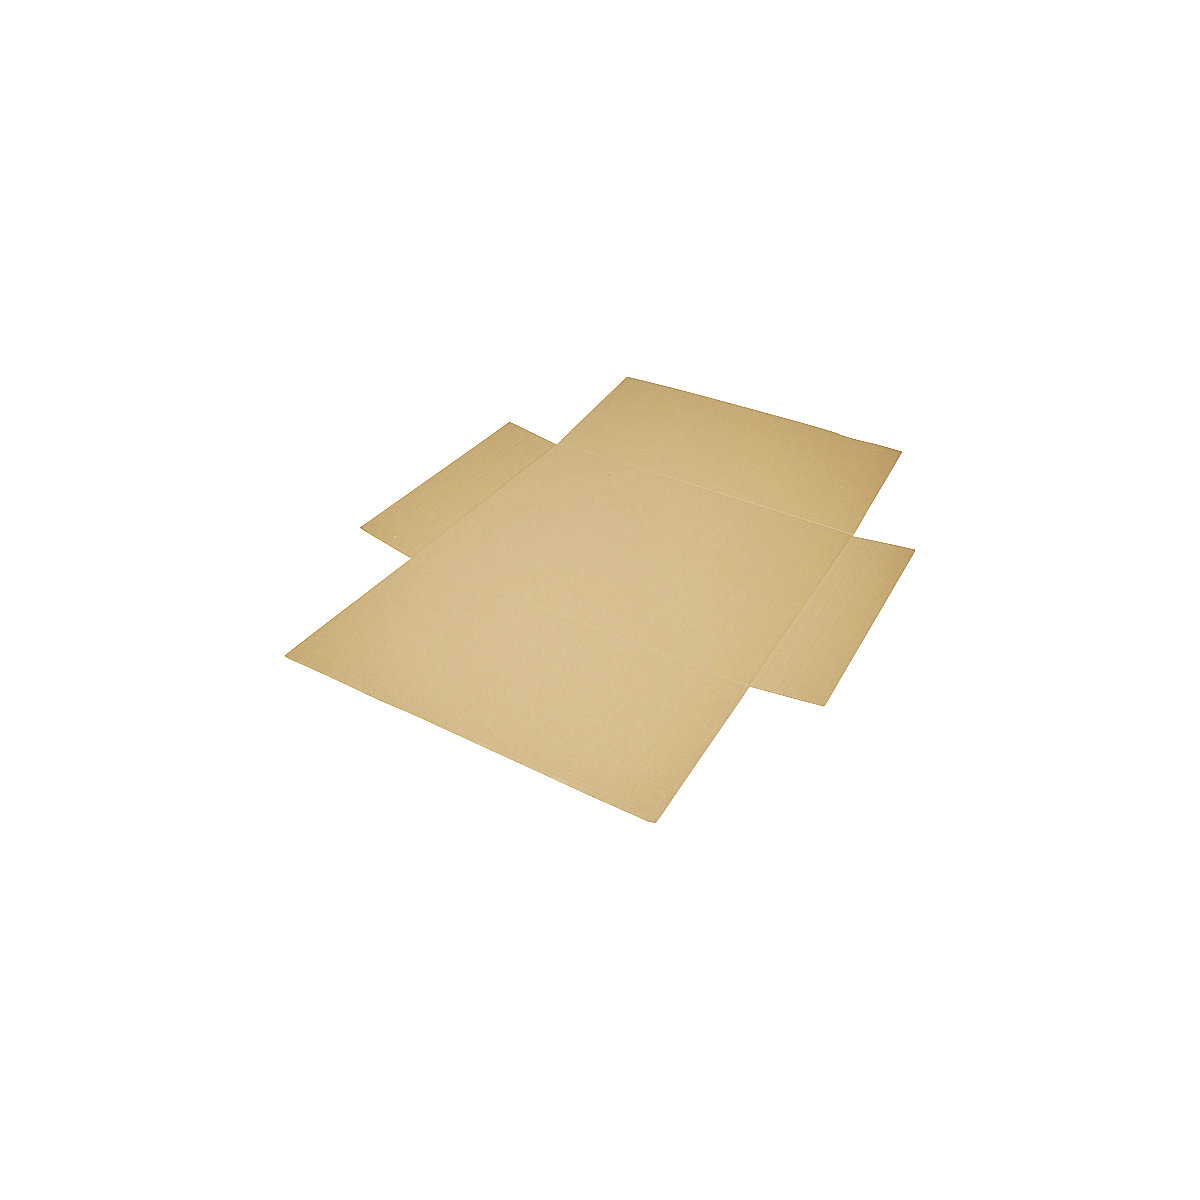 Imballaggio incrociato, in pezzo unico, a 1 parete, marrone, lungh. x largh. 600 x 425 mm, altezza di riempimento 50 mm, a partire da 150 pz.-8